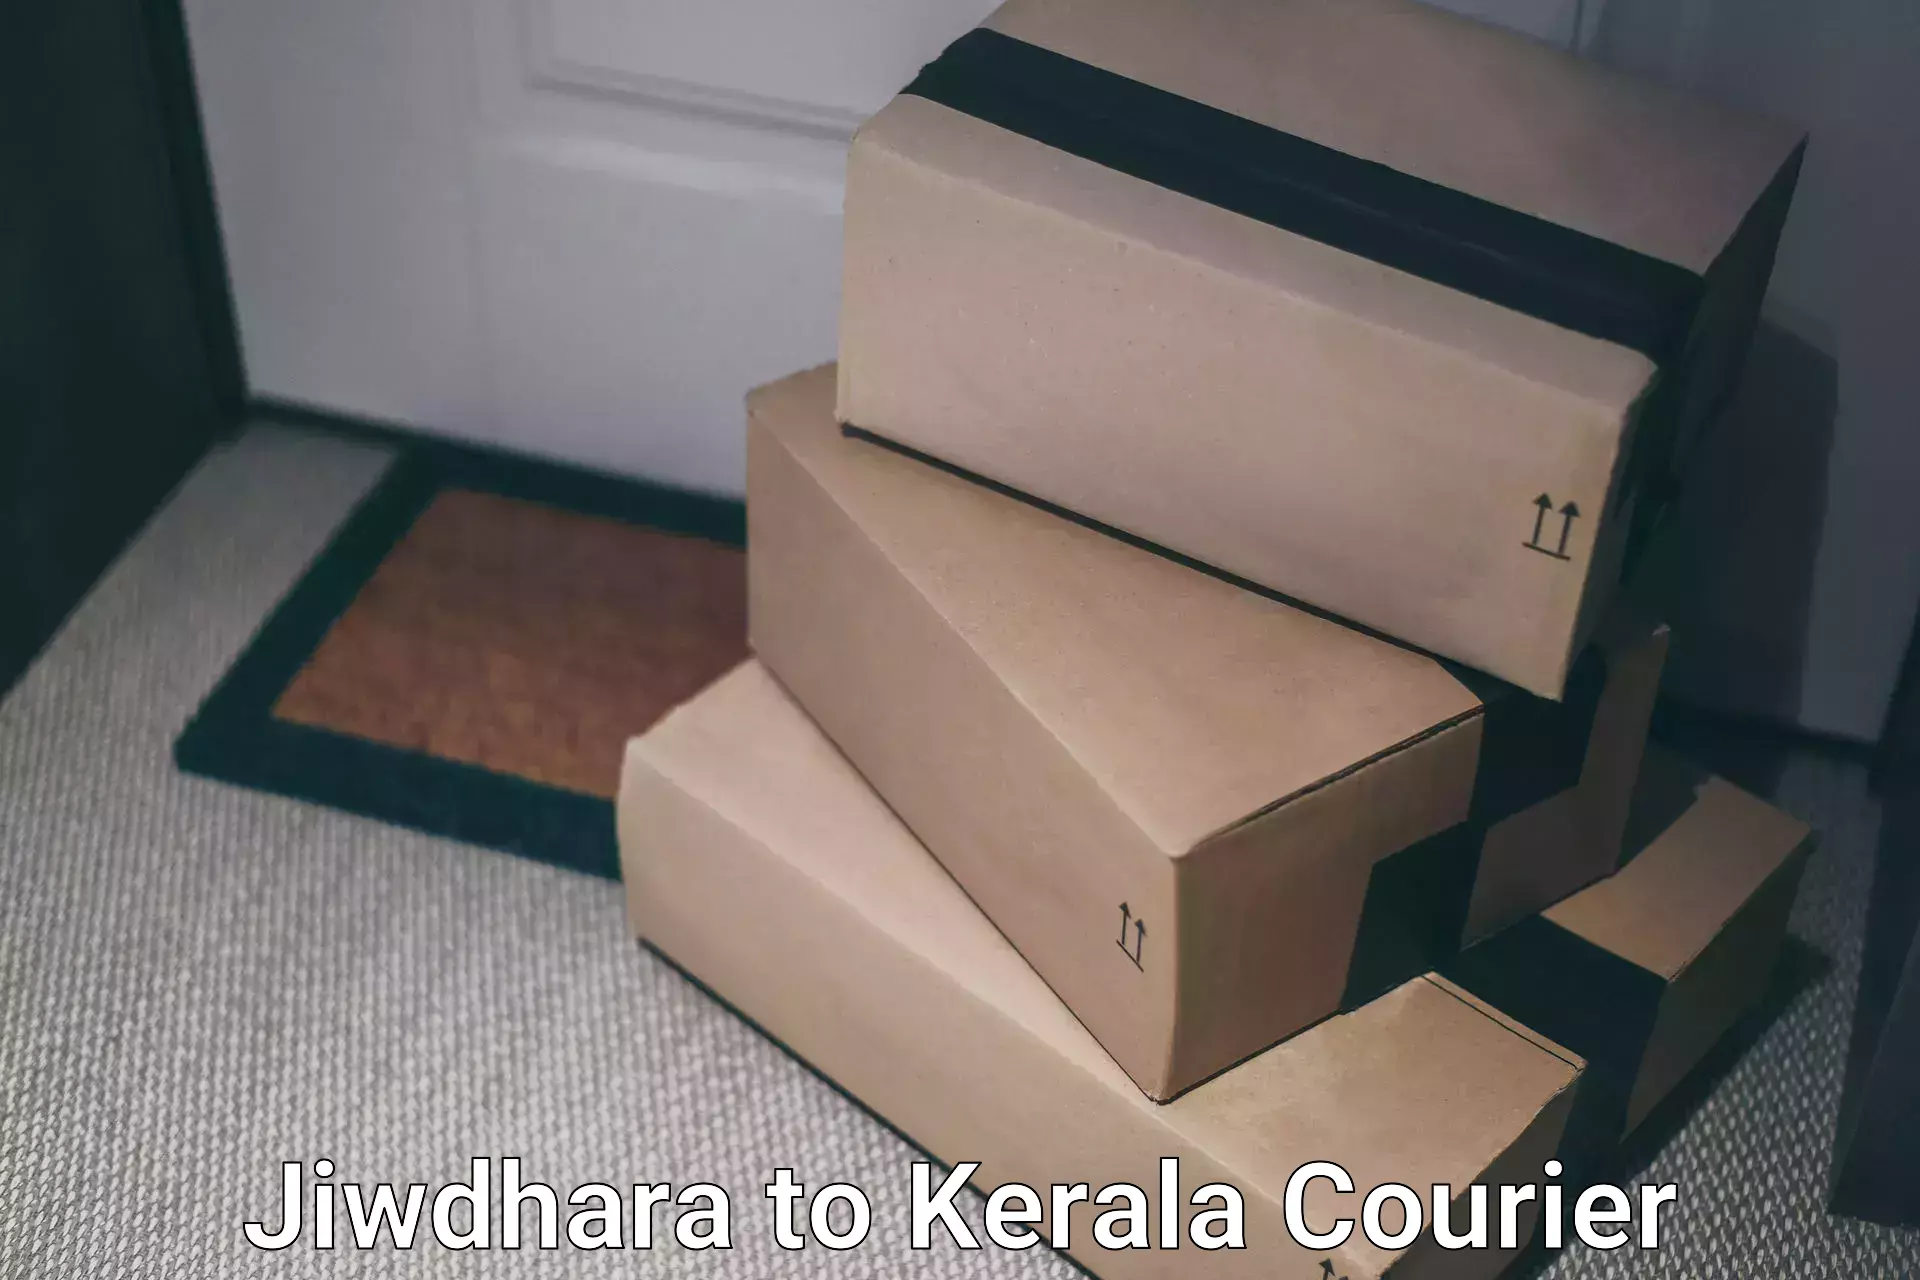 Speedy delivery service Jiwdhara to Thrissur